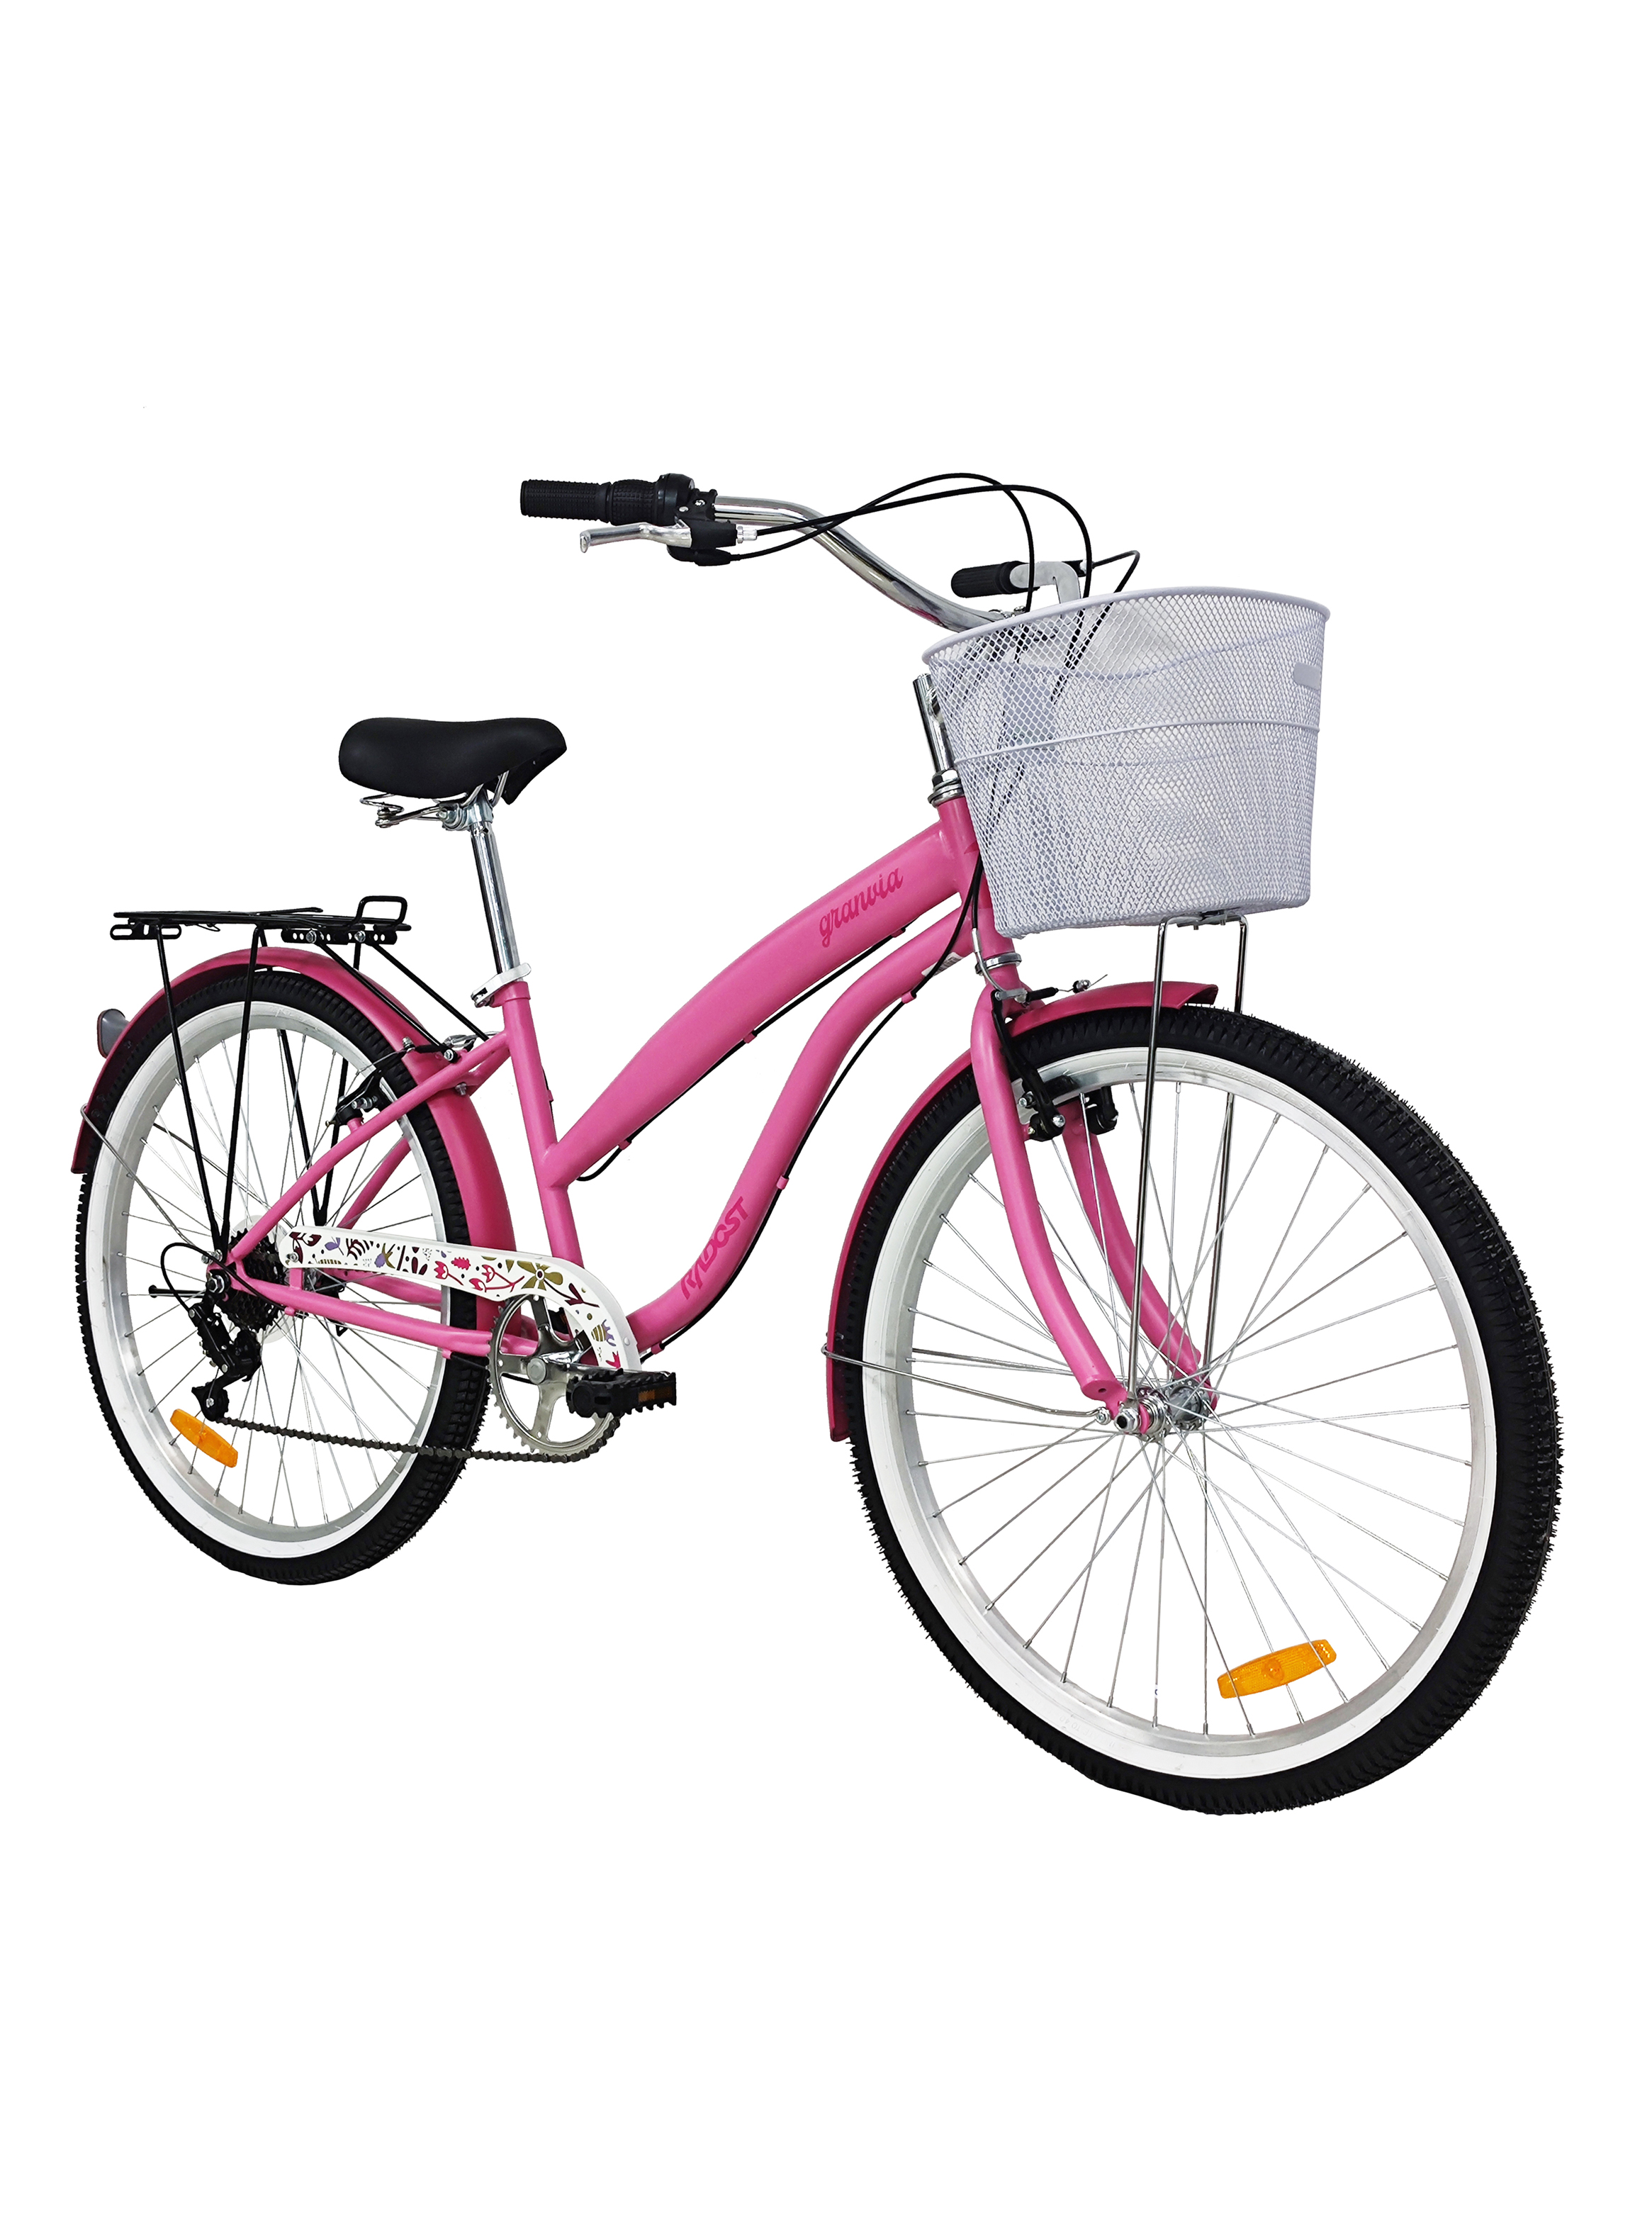 Bicicleta de Paseo Mujer Rosa Aro 26 - Bicicletas Urbanas